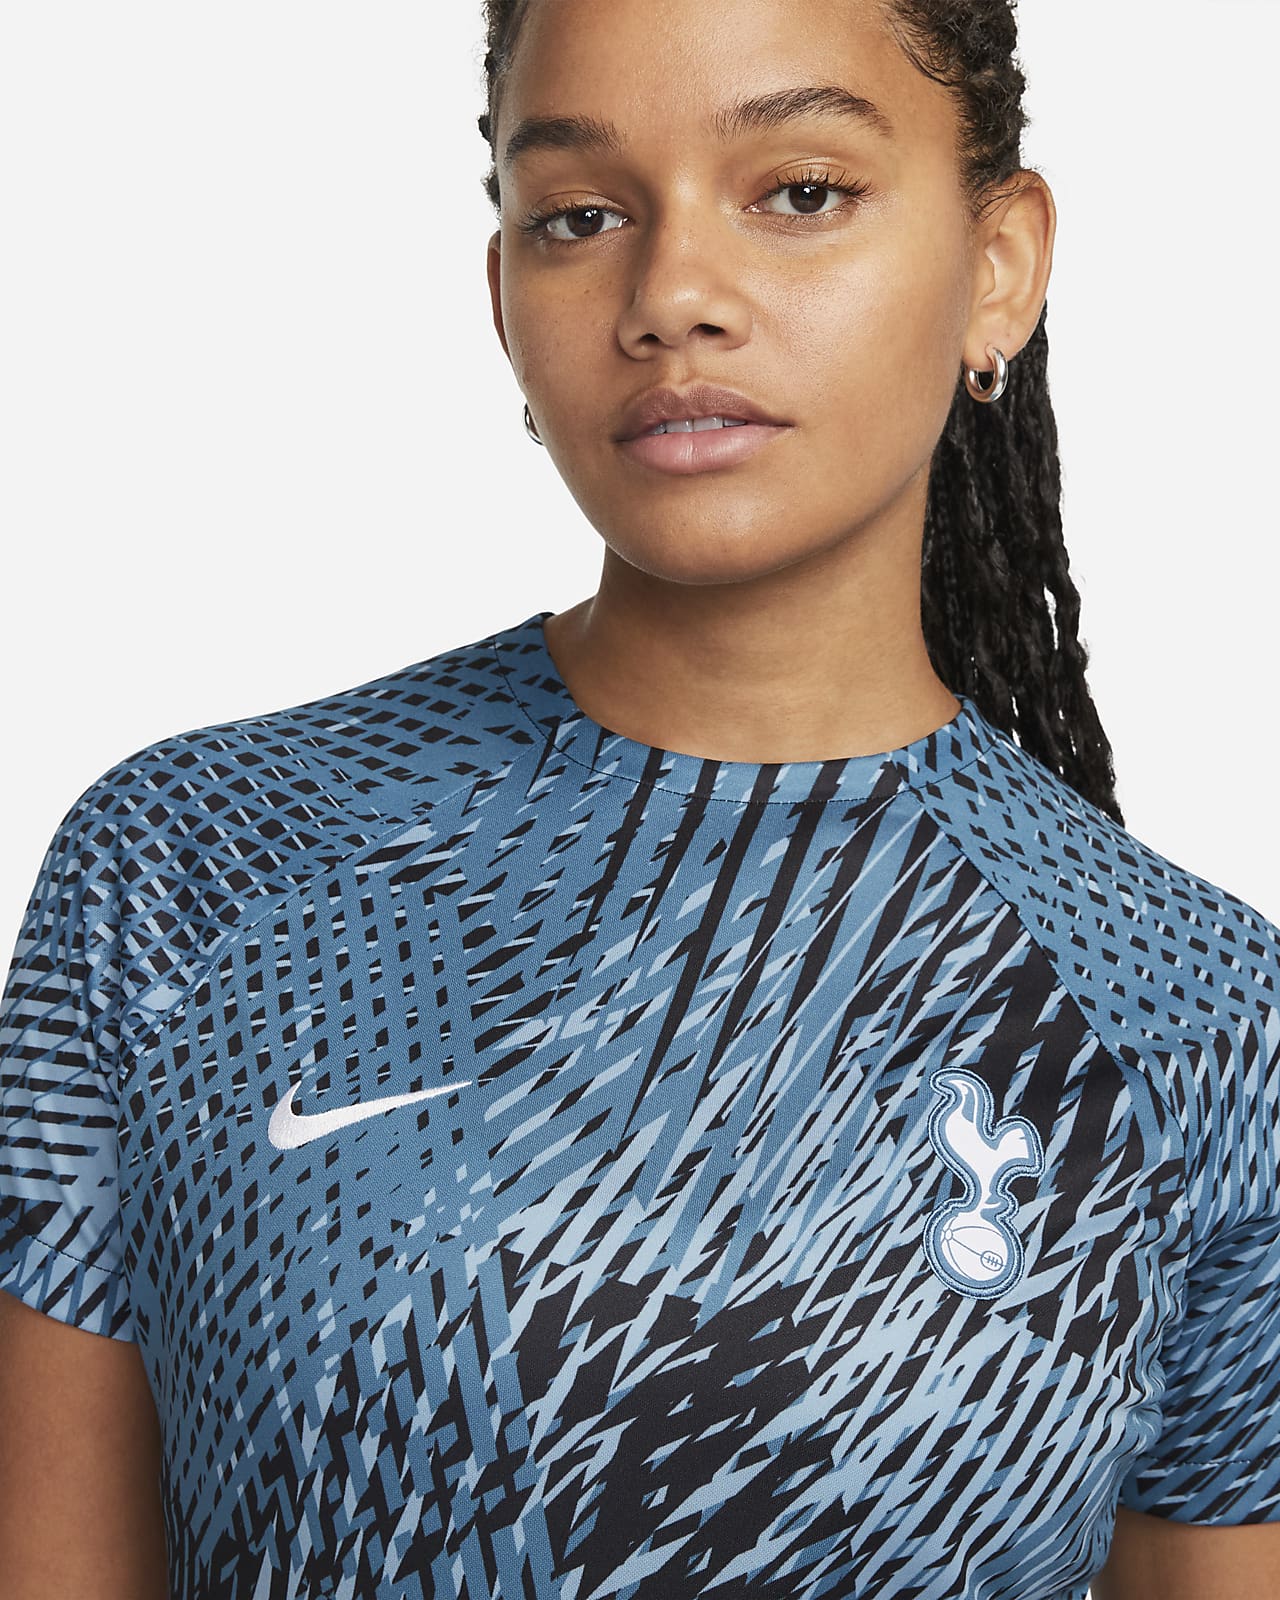 Nike 2018-19 Tottenham Hotspur Shirt M M